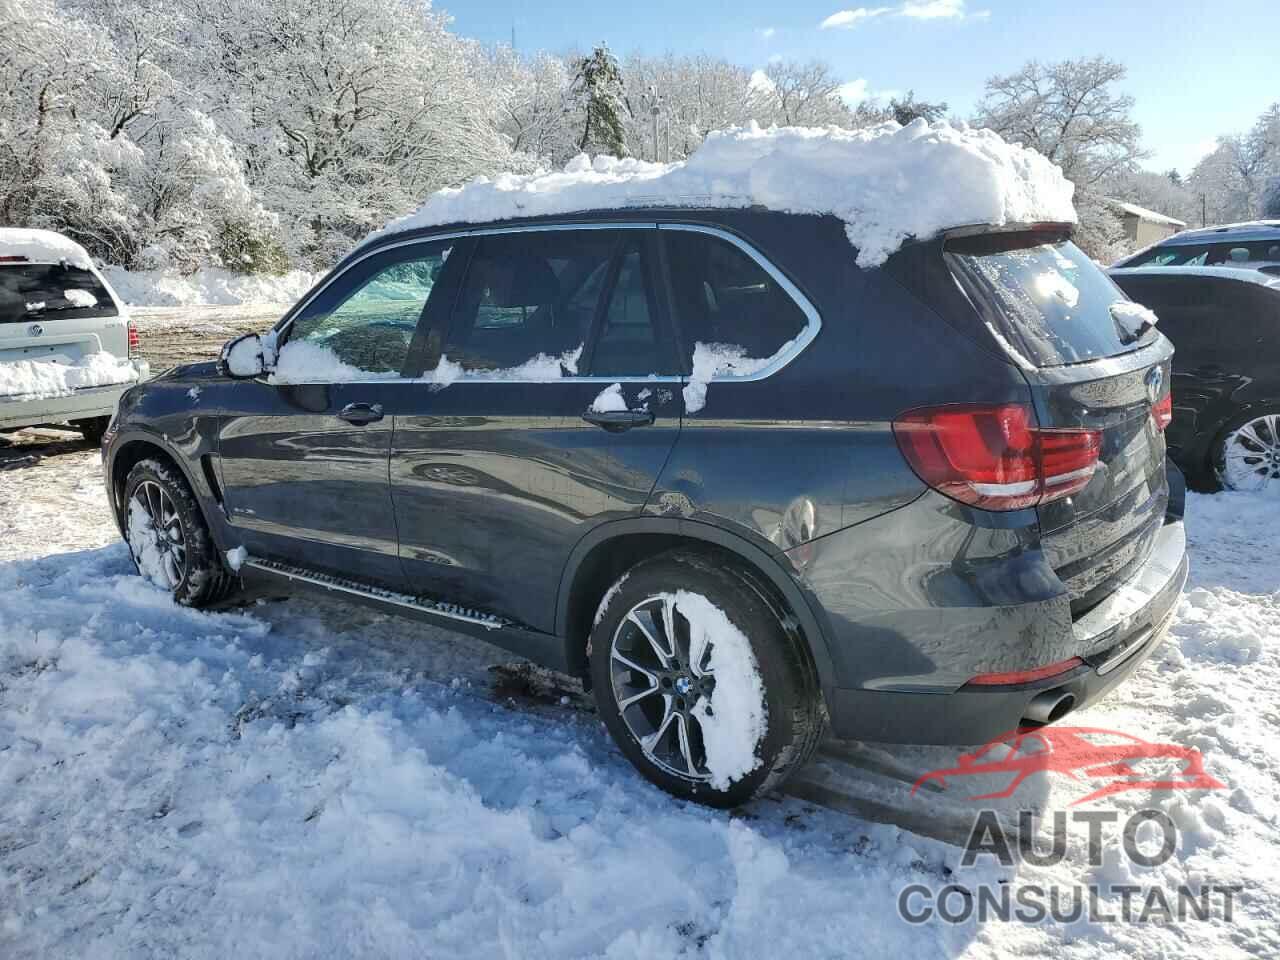 BMW X5 2015 - 5UXKR0C5XF0K64081